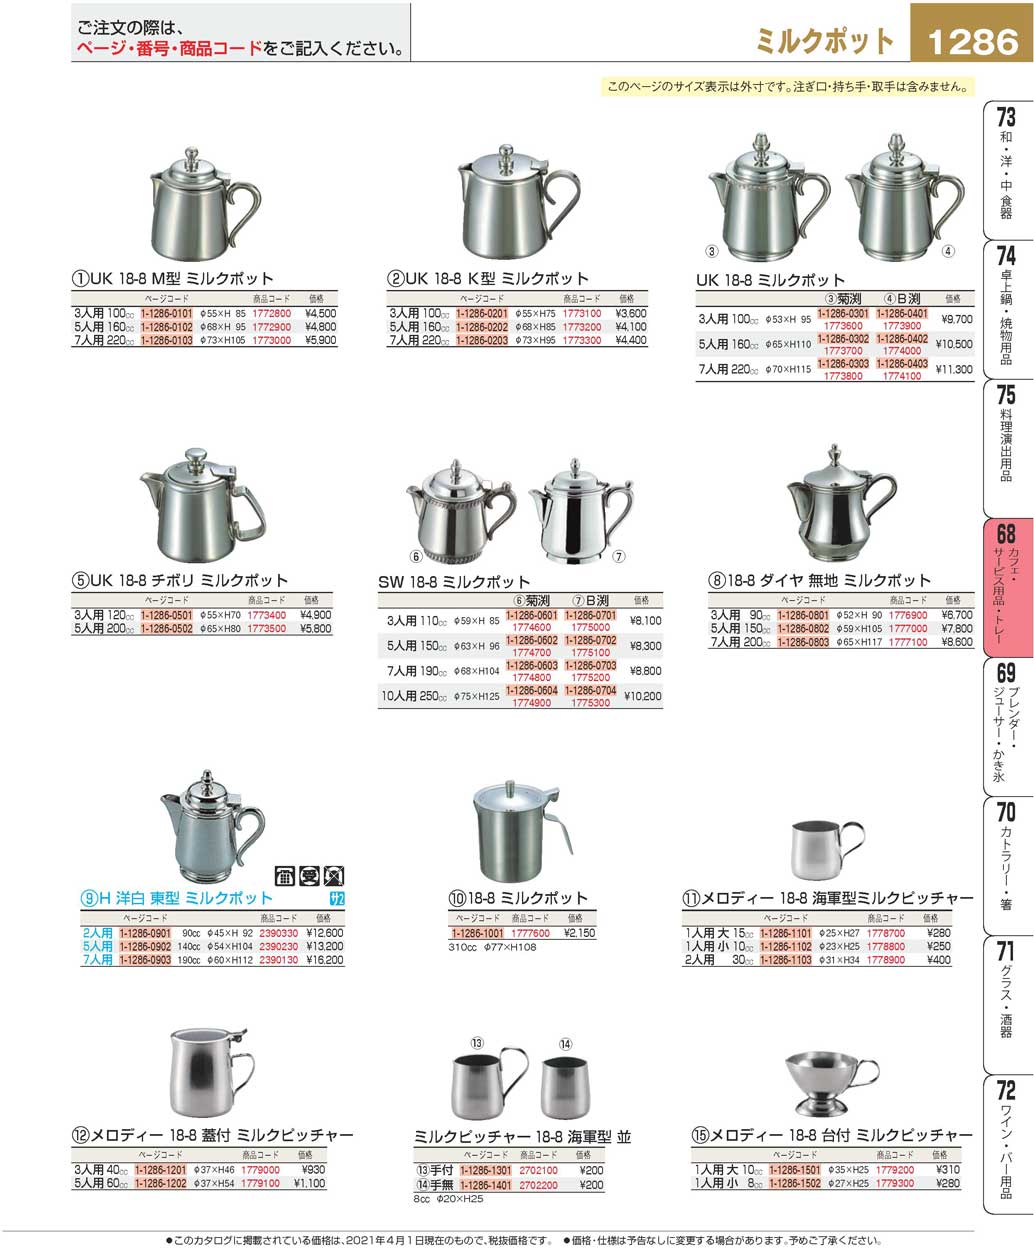 2613円 【楽天市場】 コーヒーポット M型 18-8 ステンレス UK 3人用